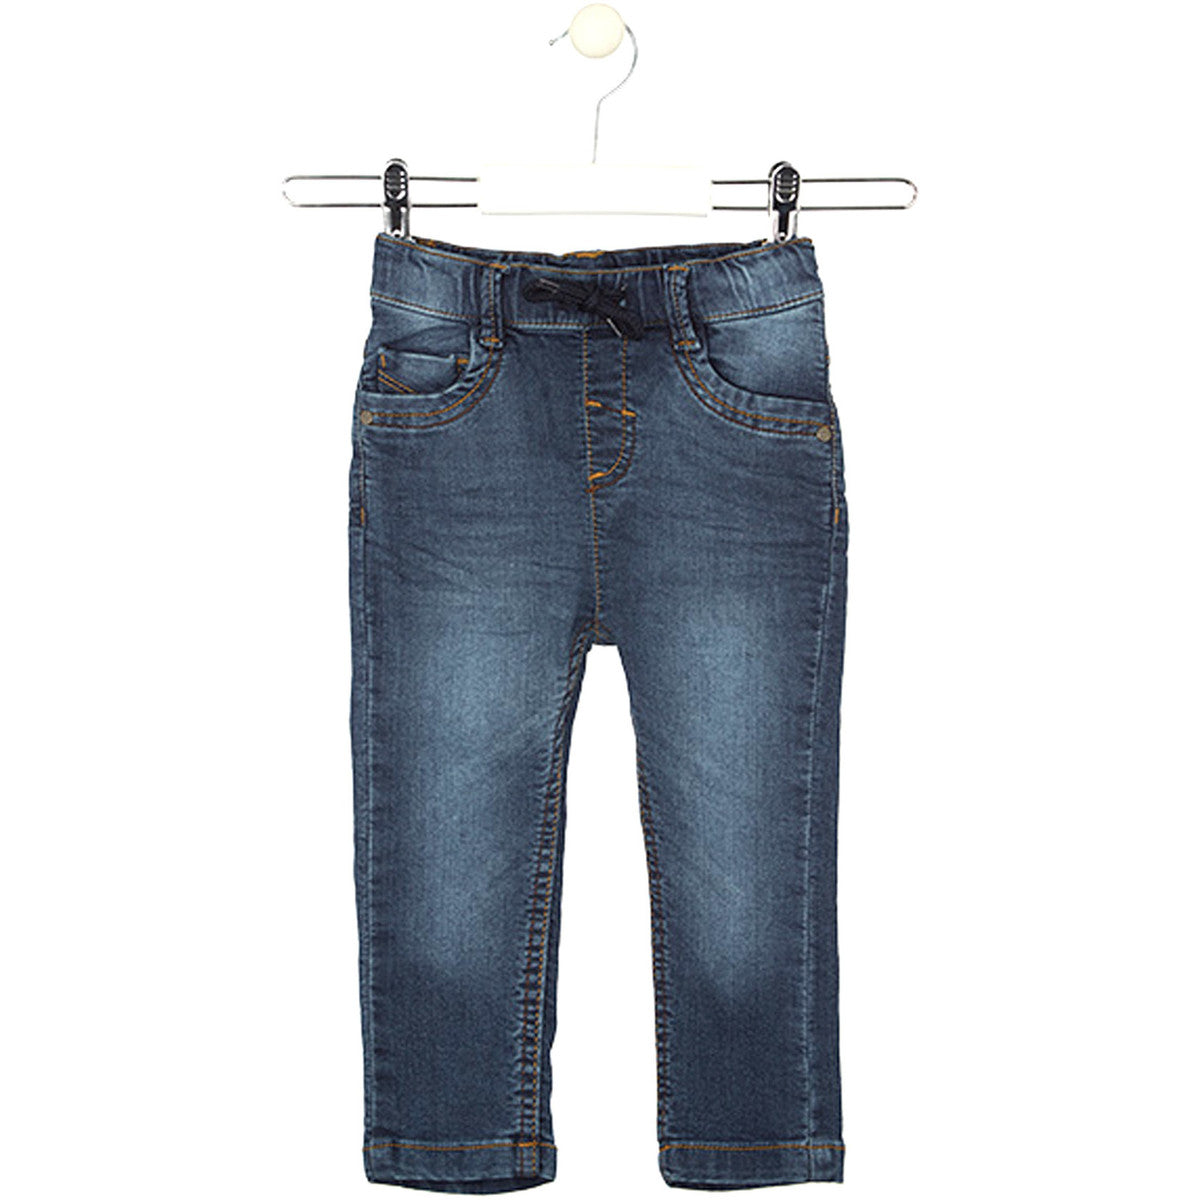 Losan - Jeans bleu foncé ajustement à l'intérieur, 3-6 mois